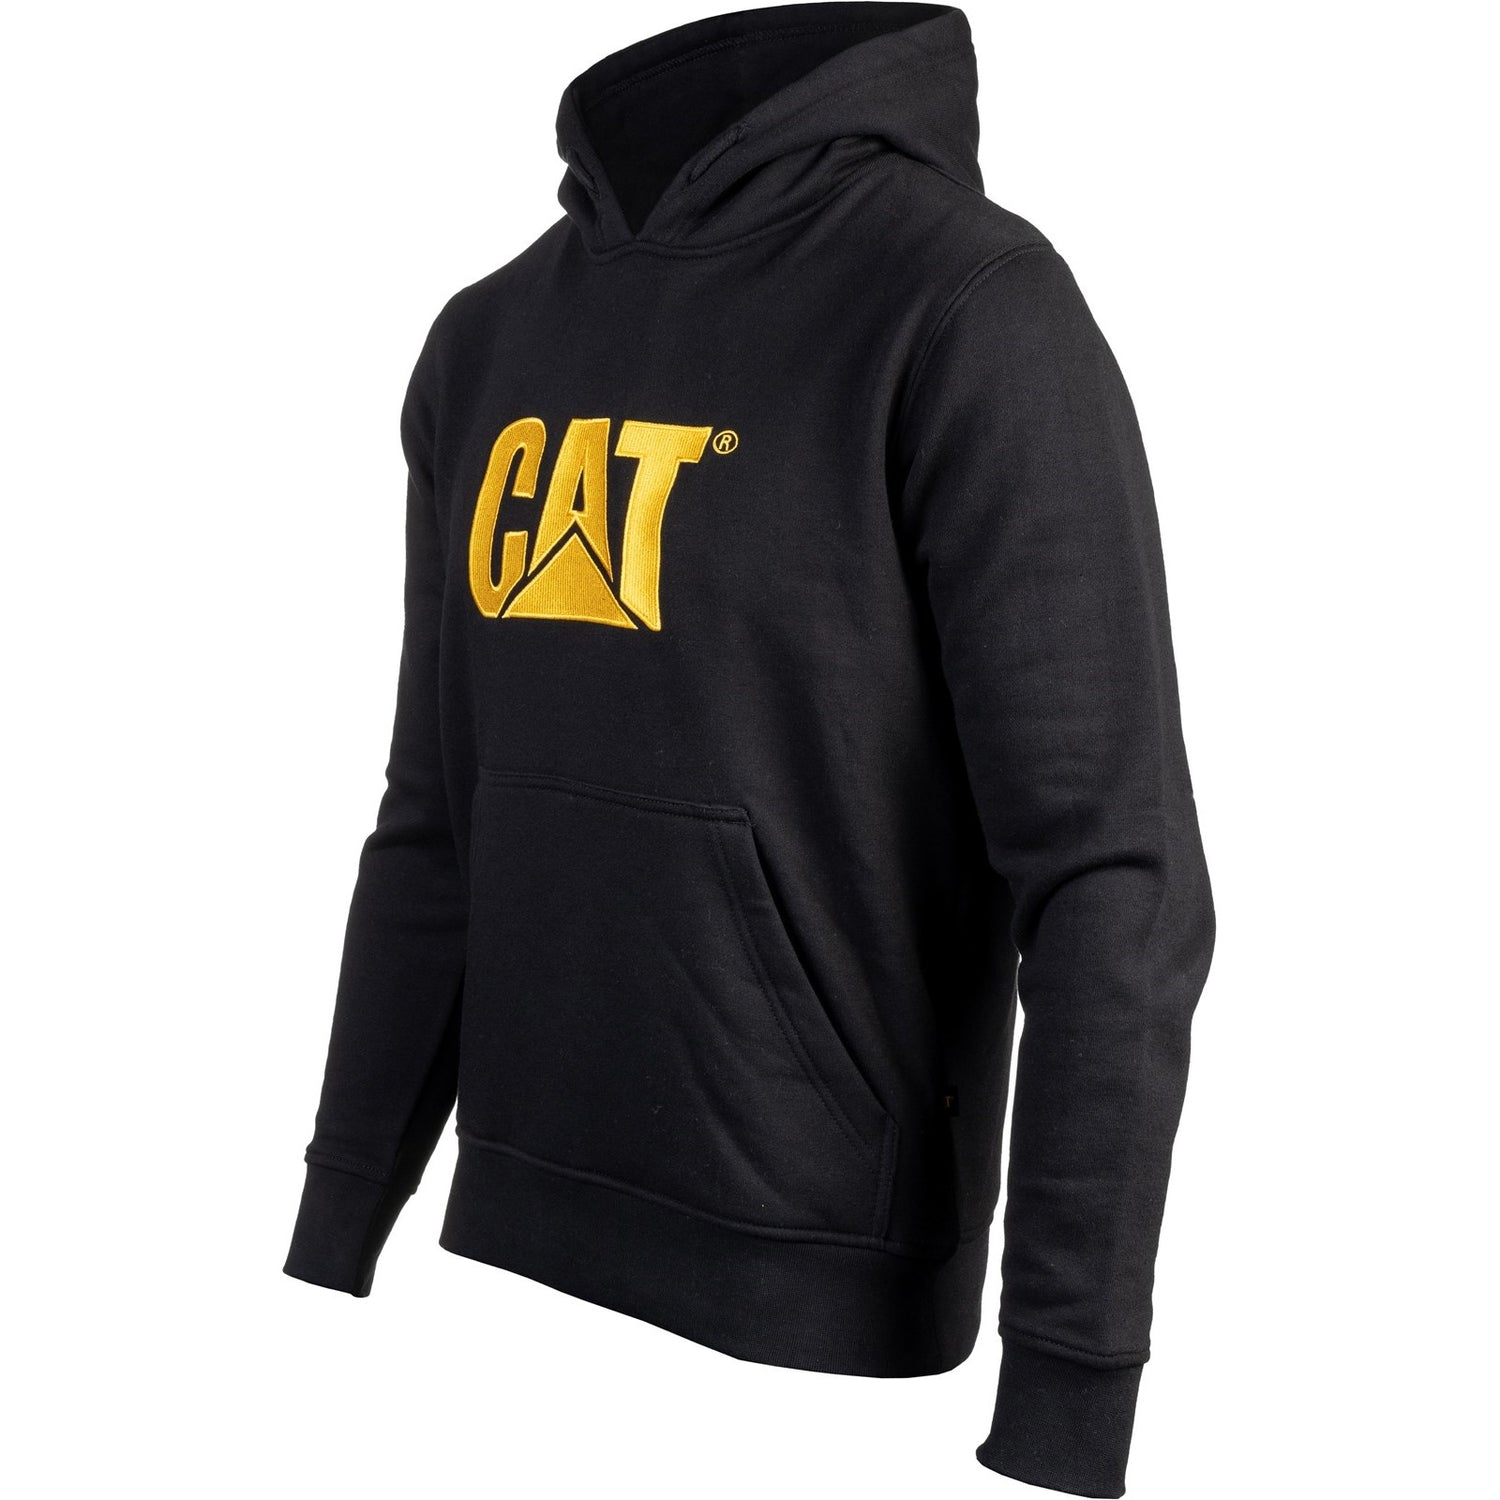 Caterpillar Trademark Hooded Sweatshirt in Black